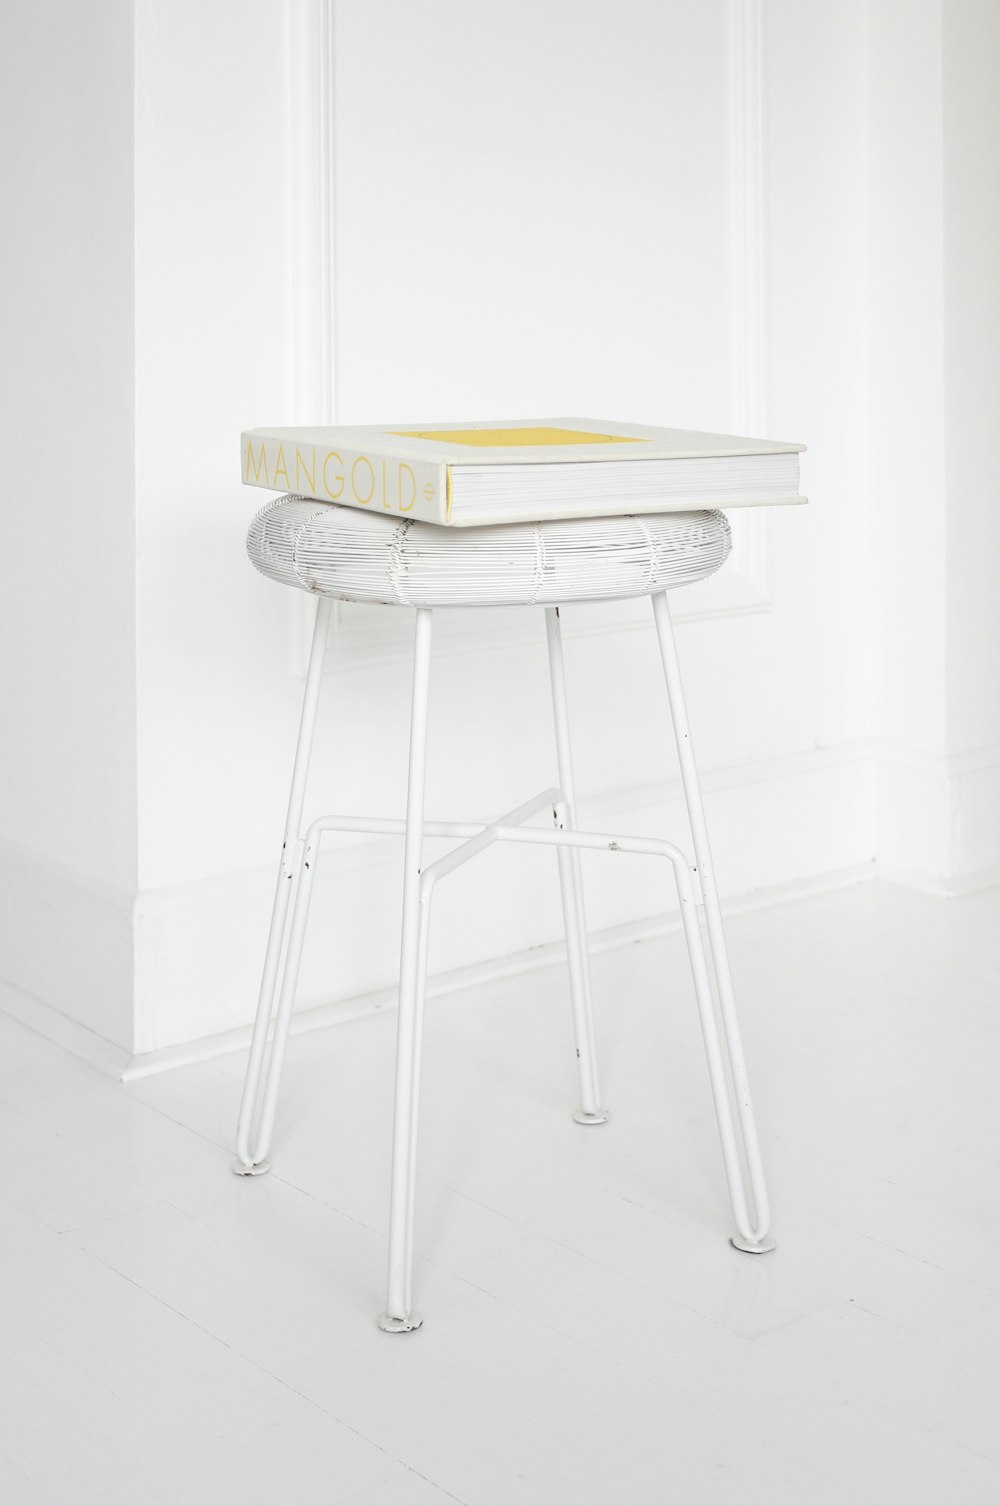 Mangold box on white stool